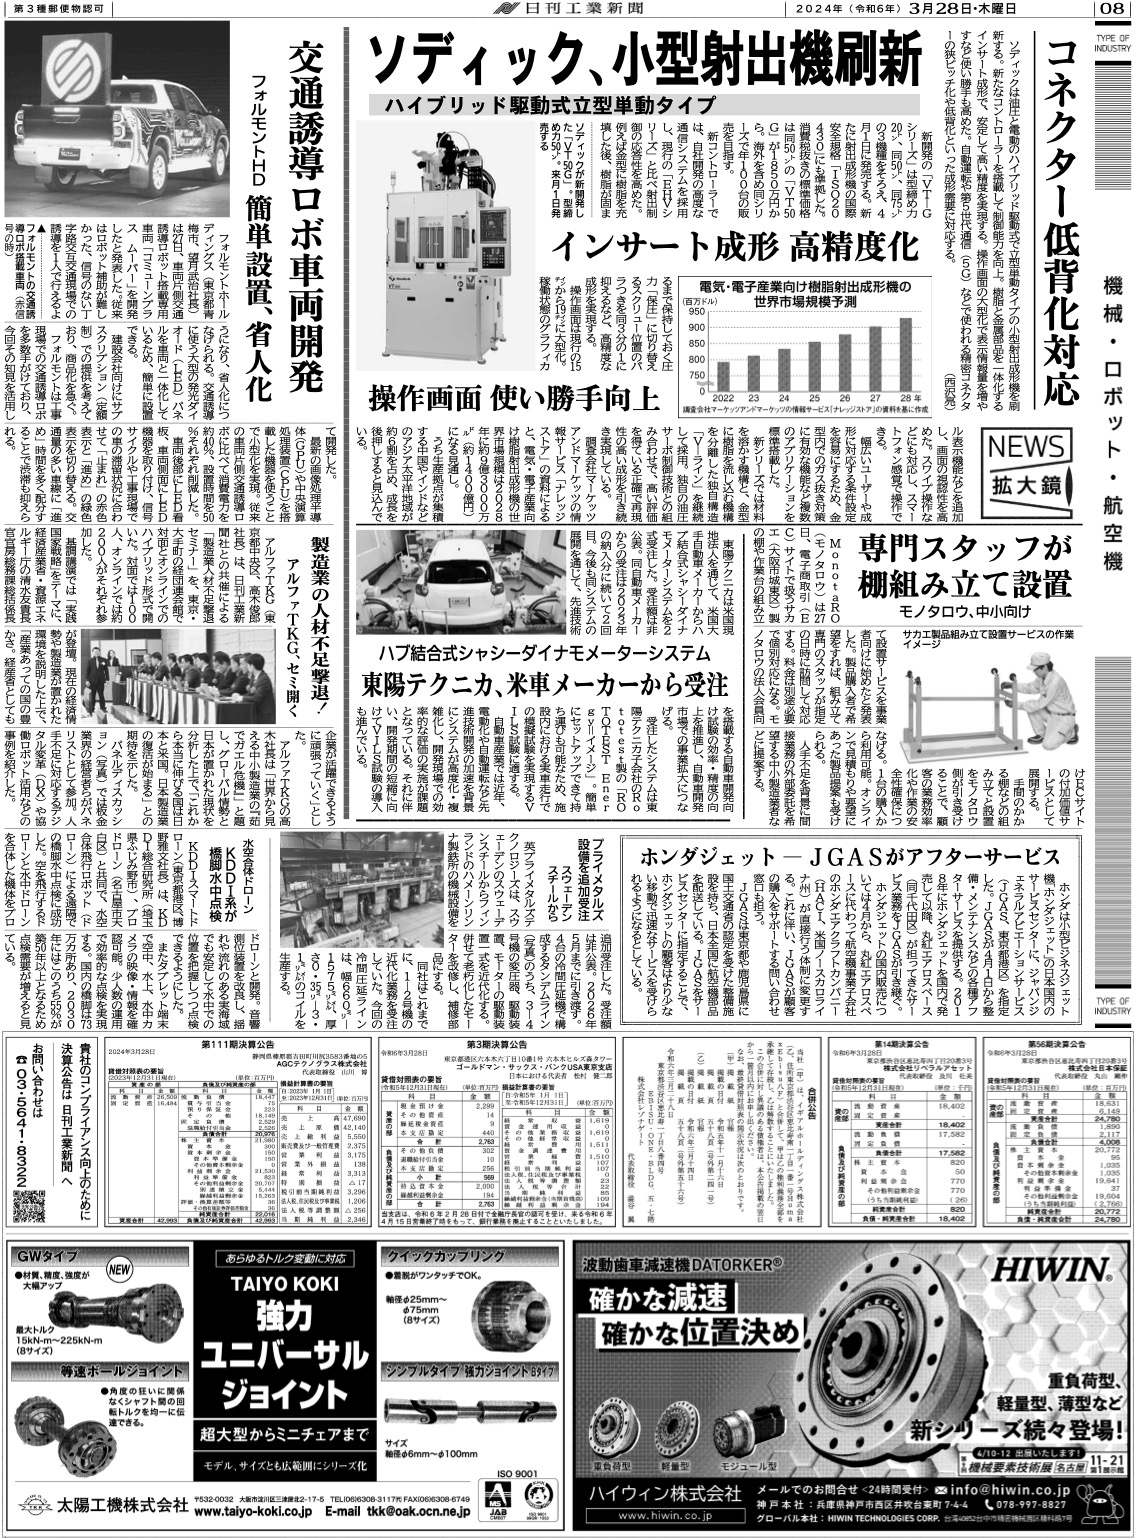 日刊工業新聞掲載記事20240328-1